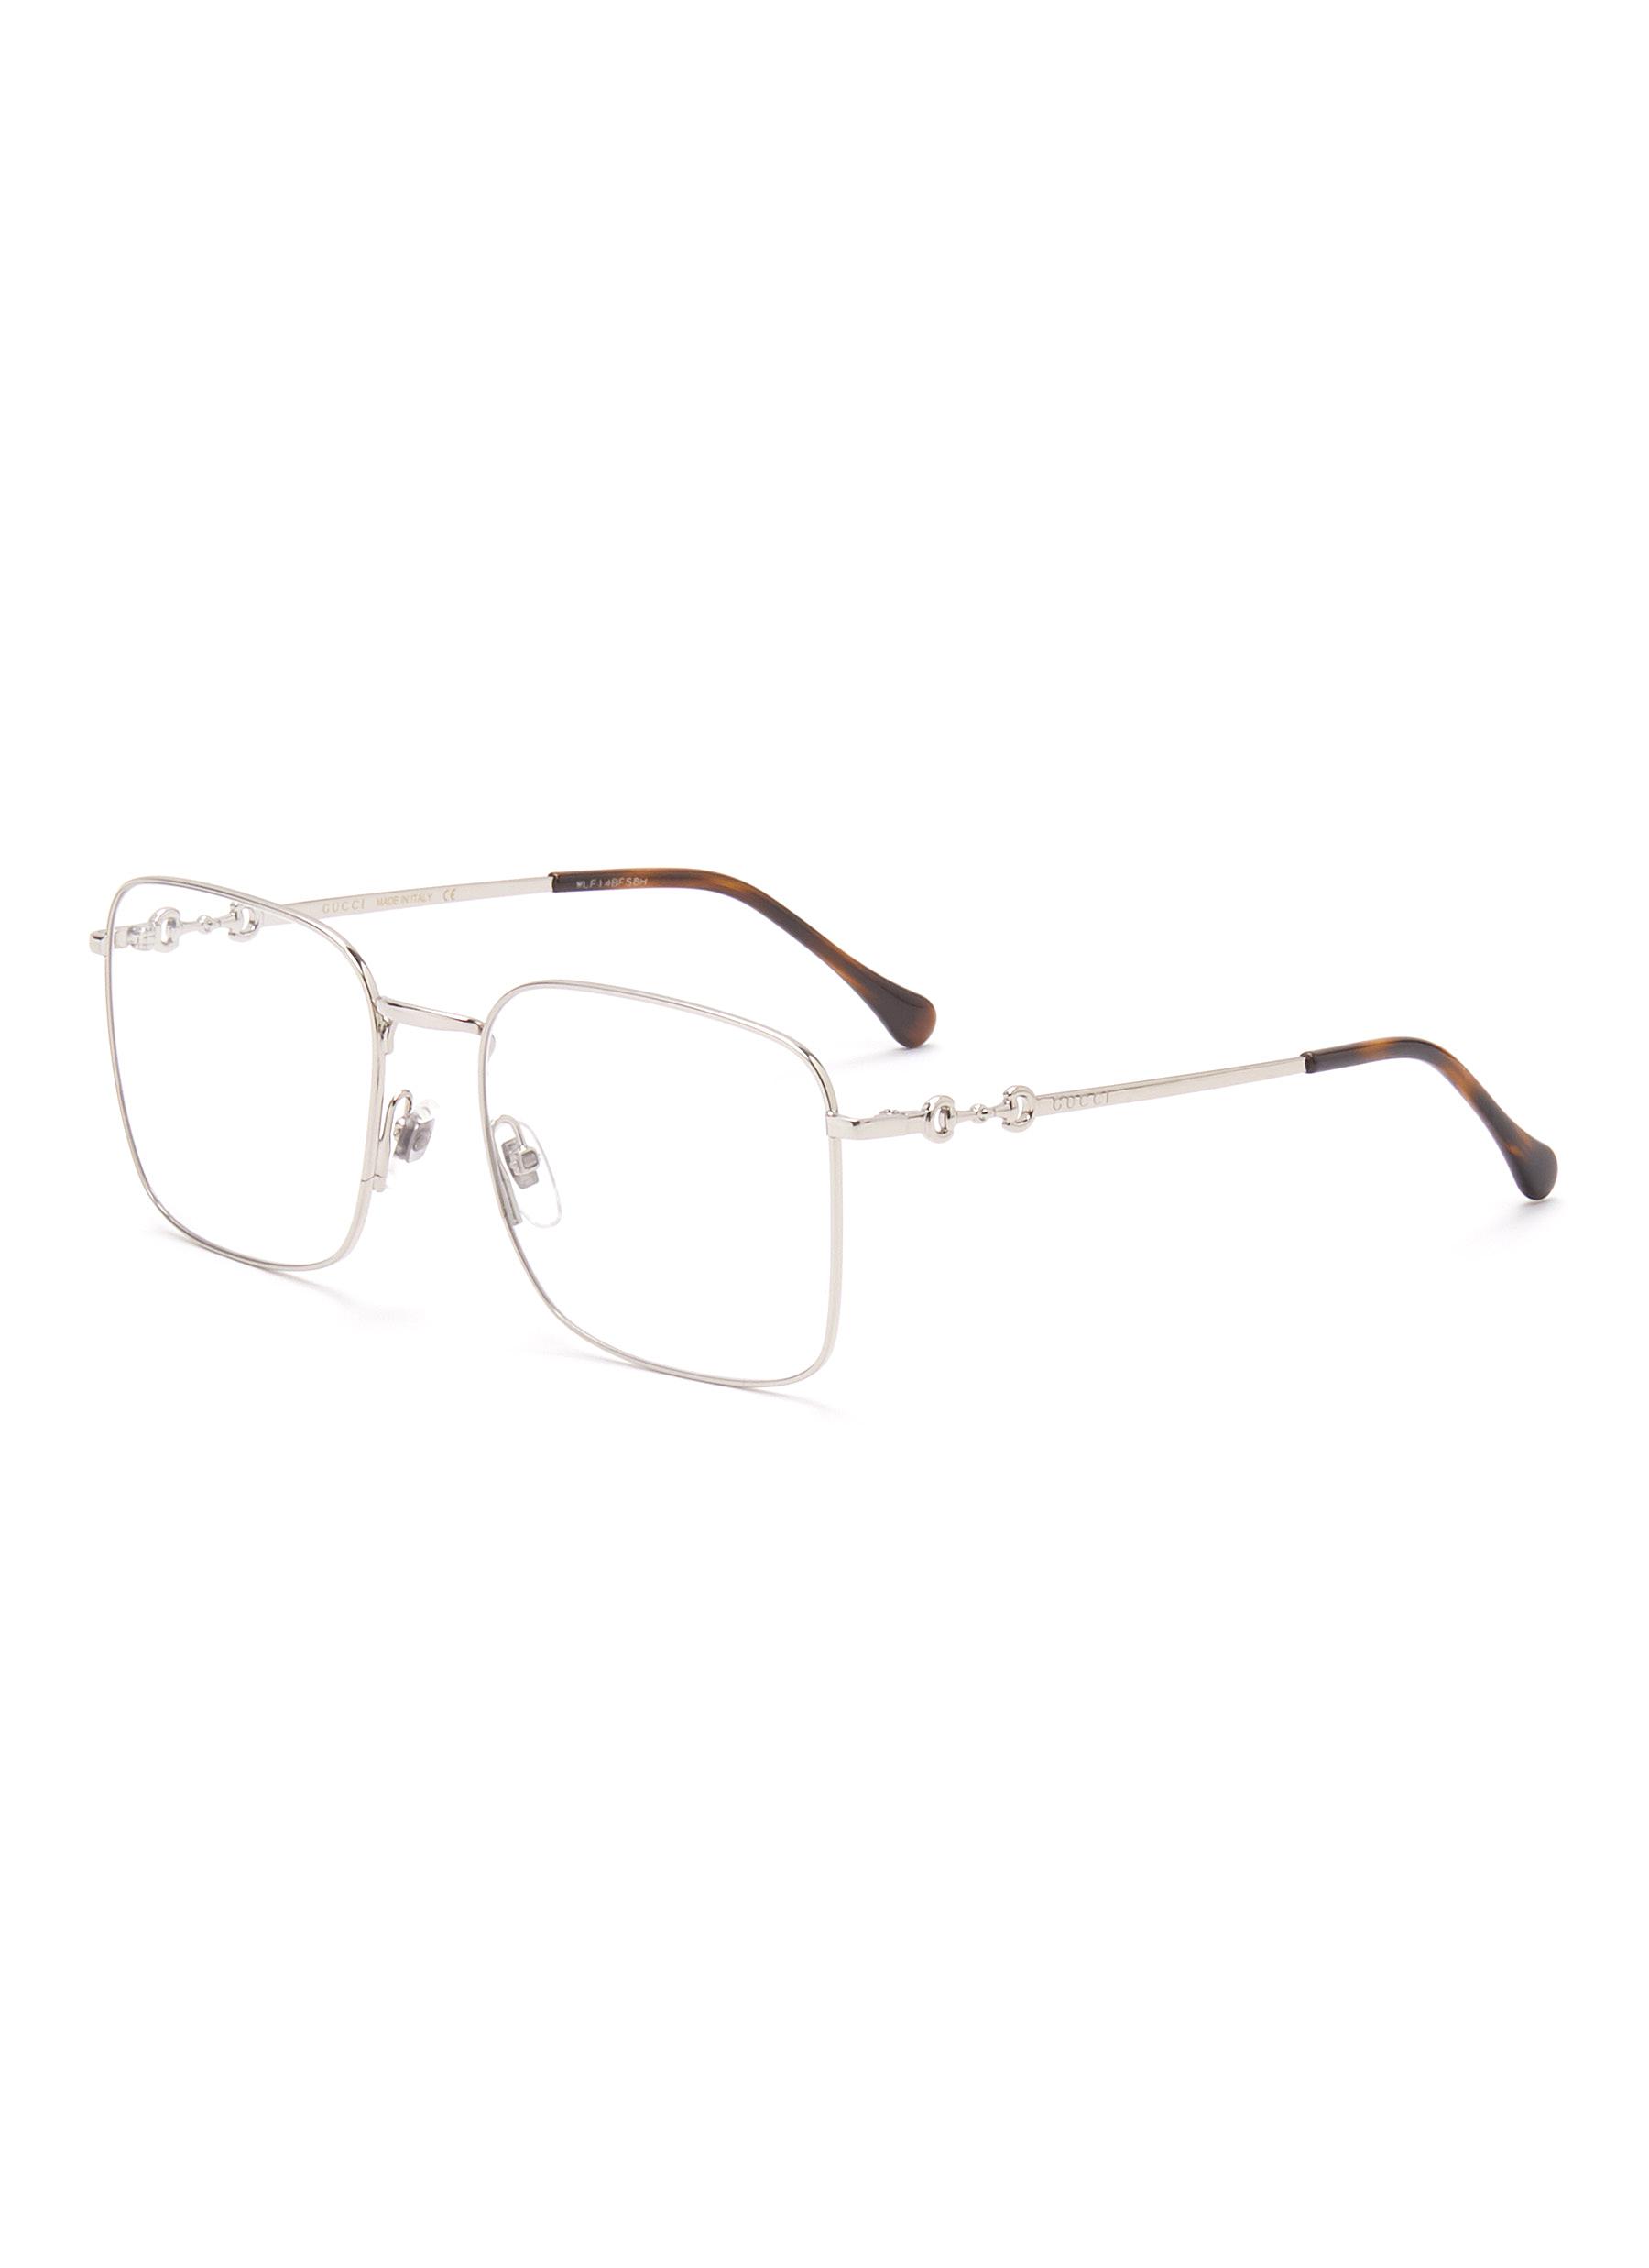 gucci square frame glasses